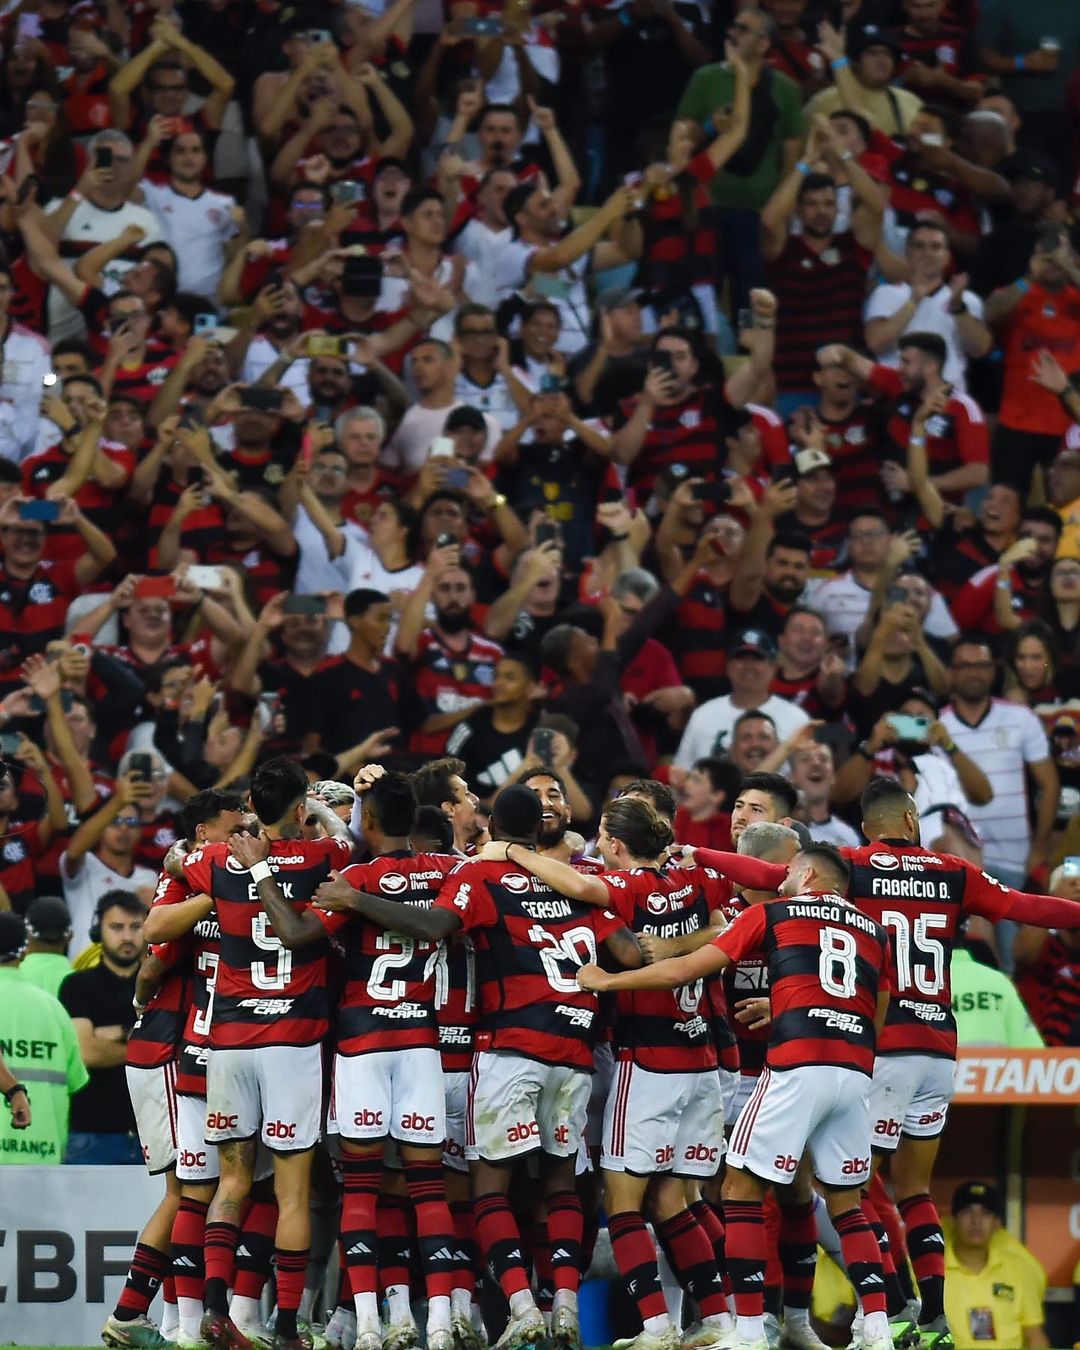 O Flamengo lidera a lista de maiores públicos em 2023. O clube carioca também caminha para bater o recorde de renda agora na final da Copa do Brasil.